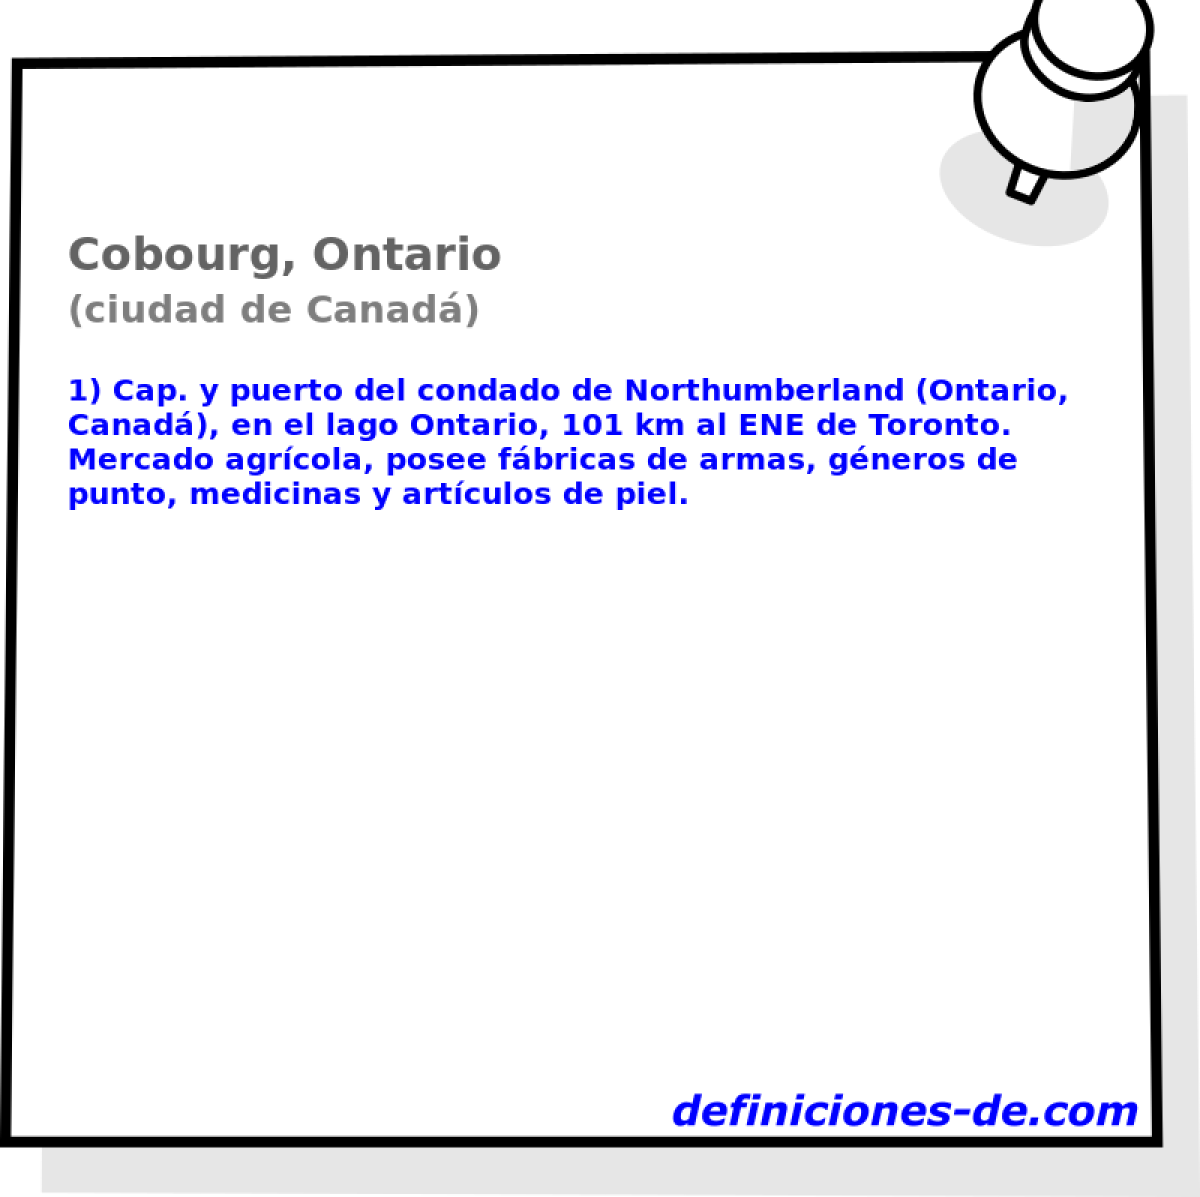 Cobourg, Ontario (ciudad de Canad)